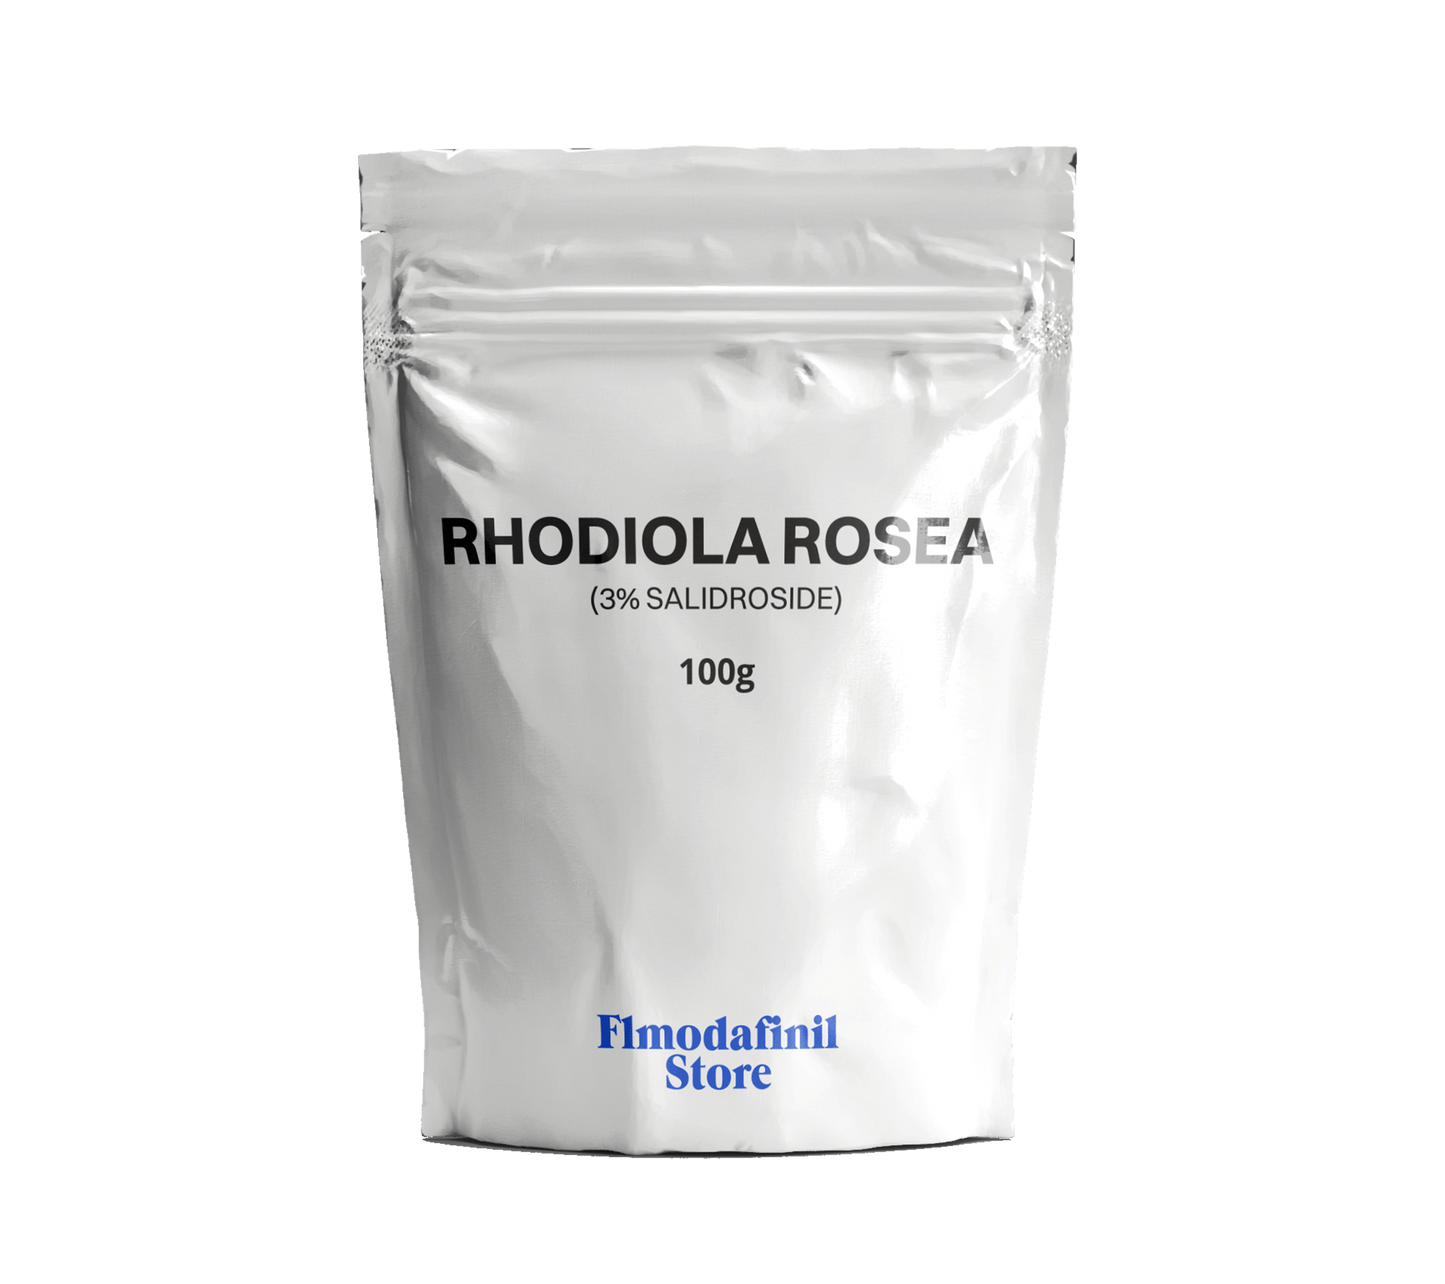 Rhodiola Rosea Powder